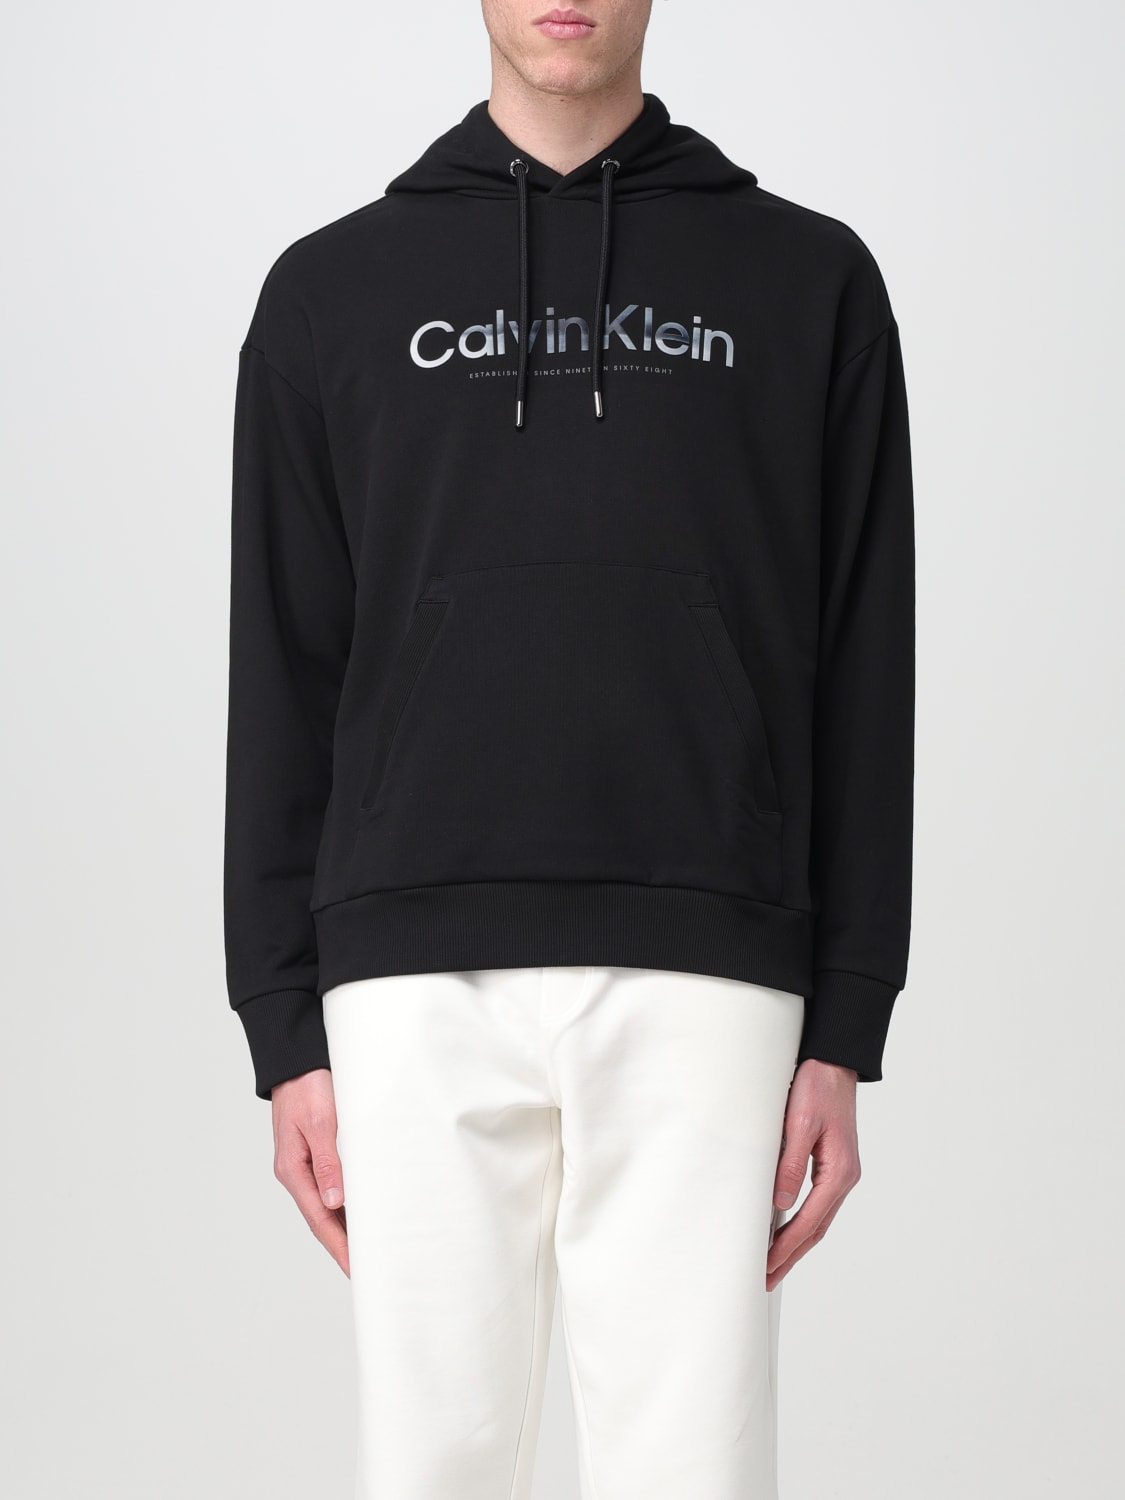 Calvin Klein Sweatshirts - Buy Calvin Klein Sweatshirts online in